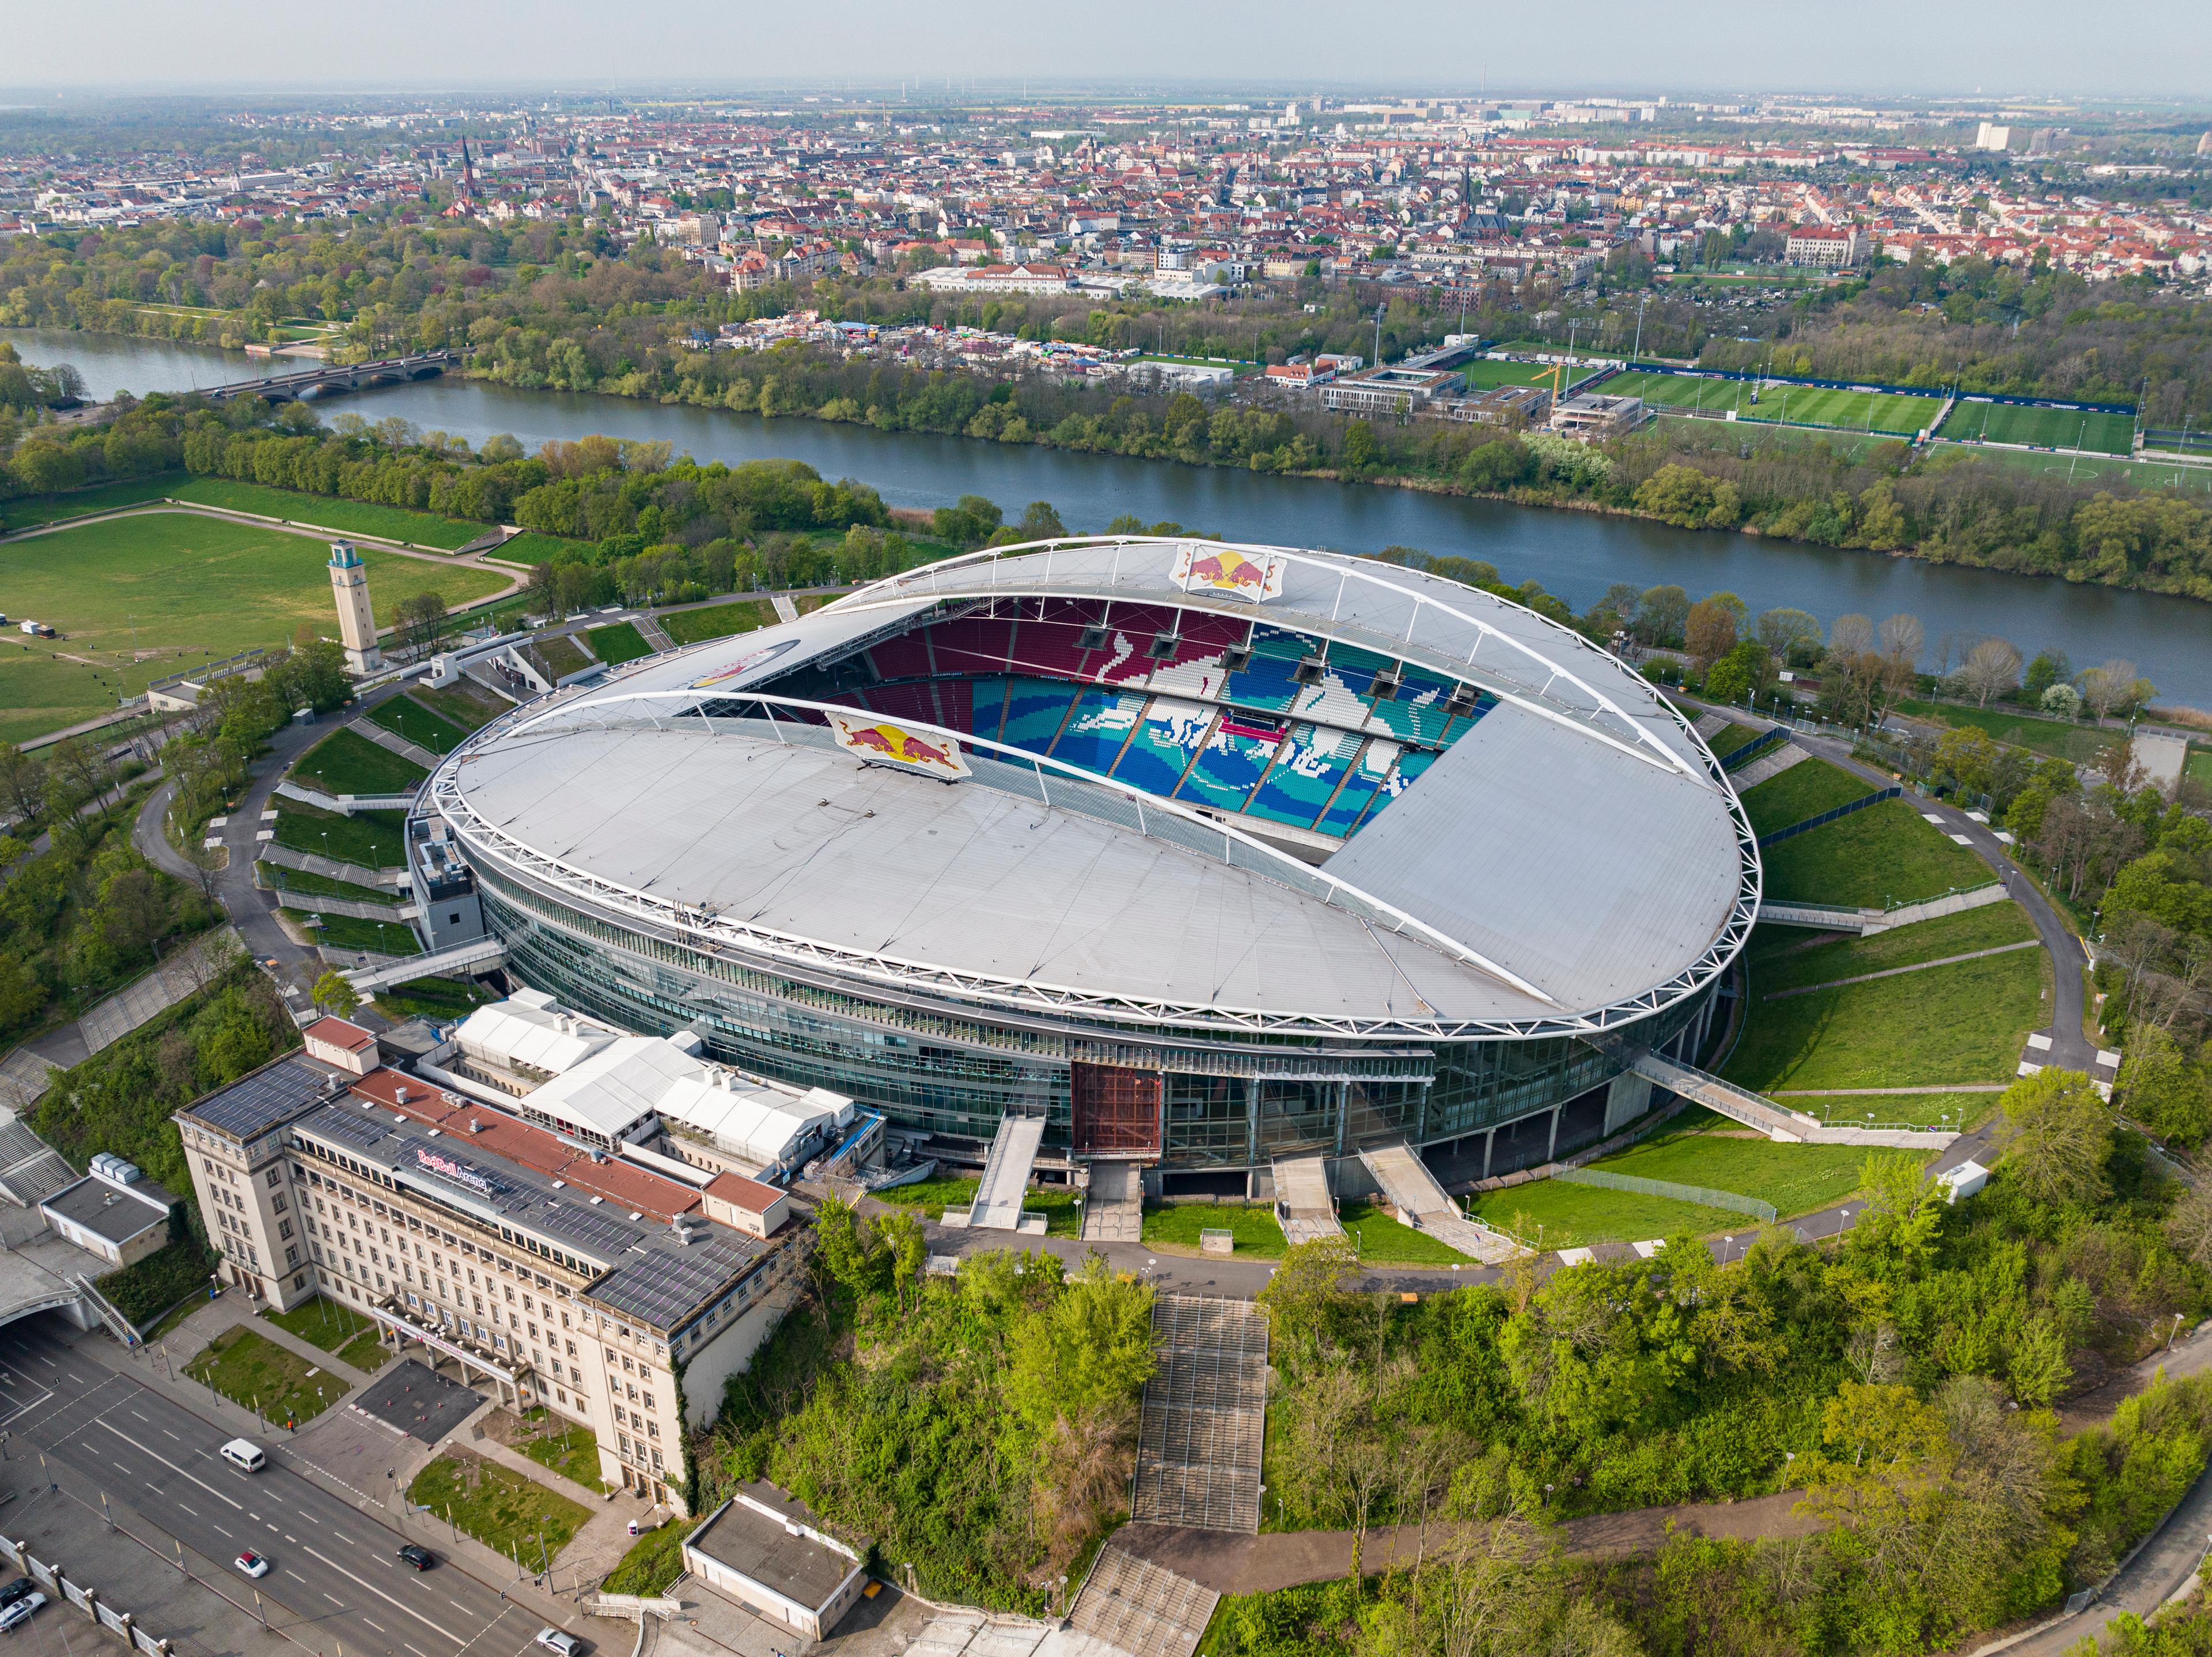 Der Blick von oben zeigt die Lage des Leipzig Stadion im Grünen.